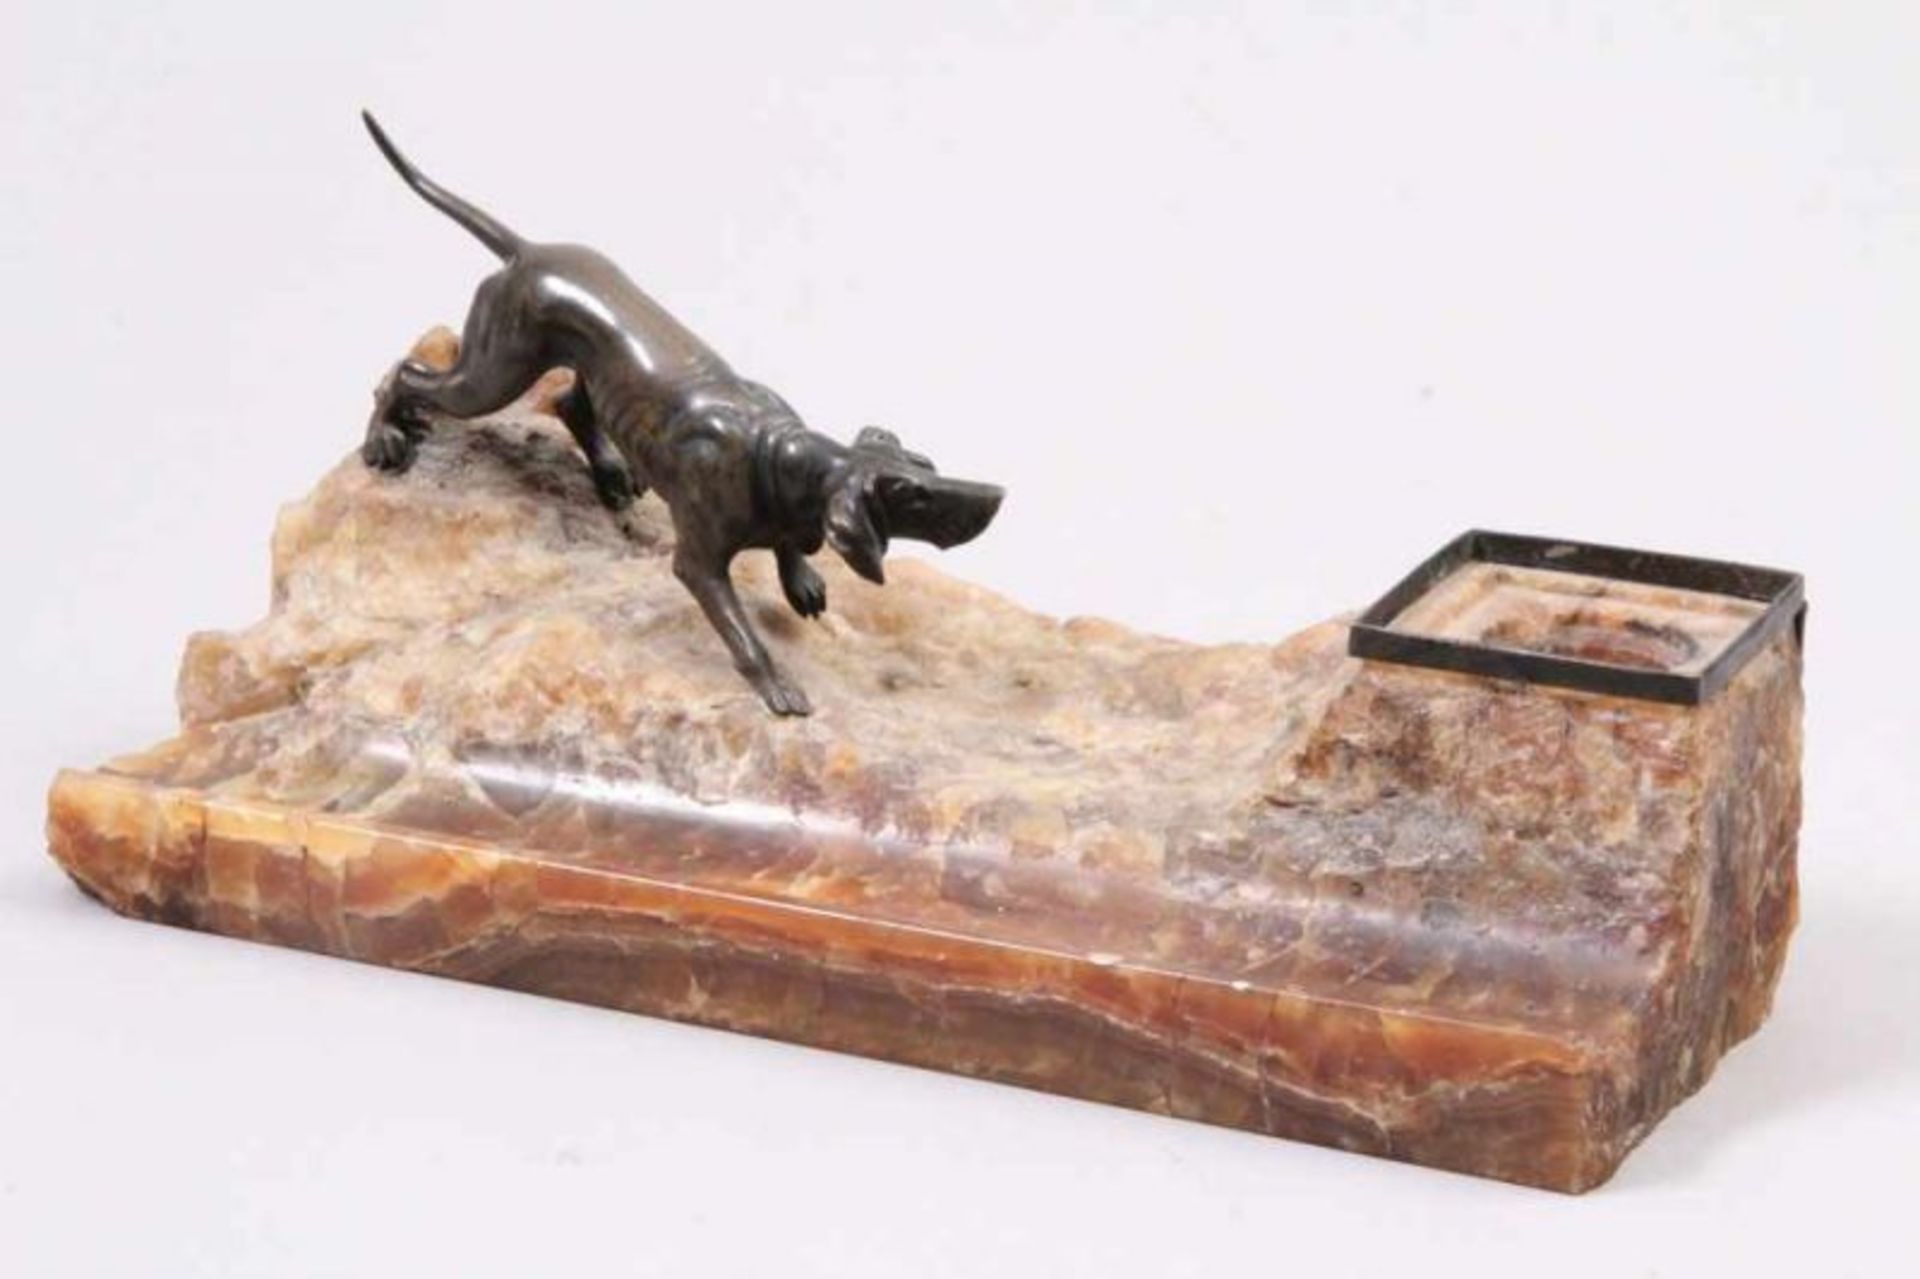 Schreibtischgarnitur.Bronzehund auf Achatsockel. L: bis 23,5 cm. Einsatz fehlt. 20.00 % buyer's